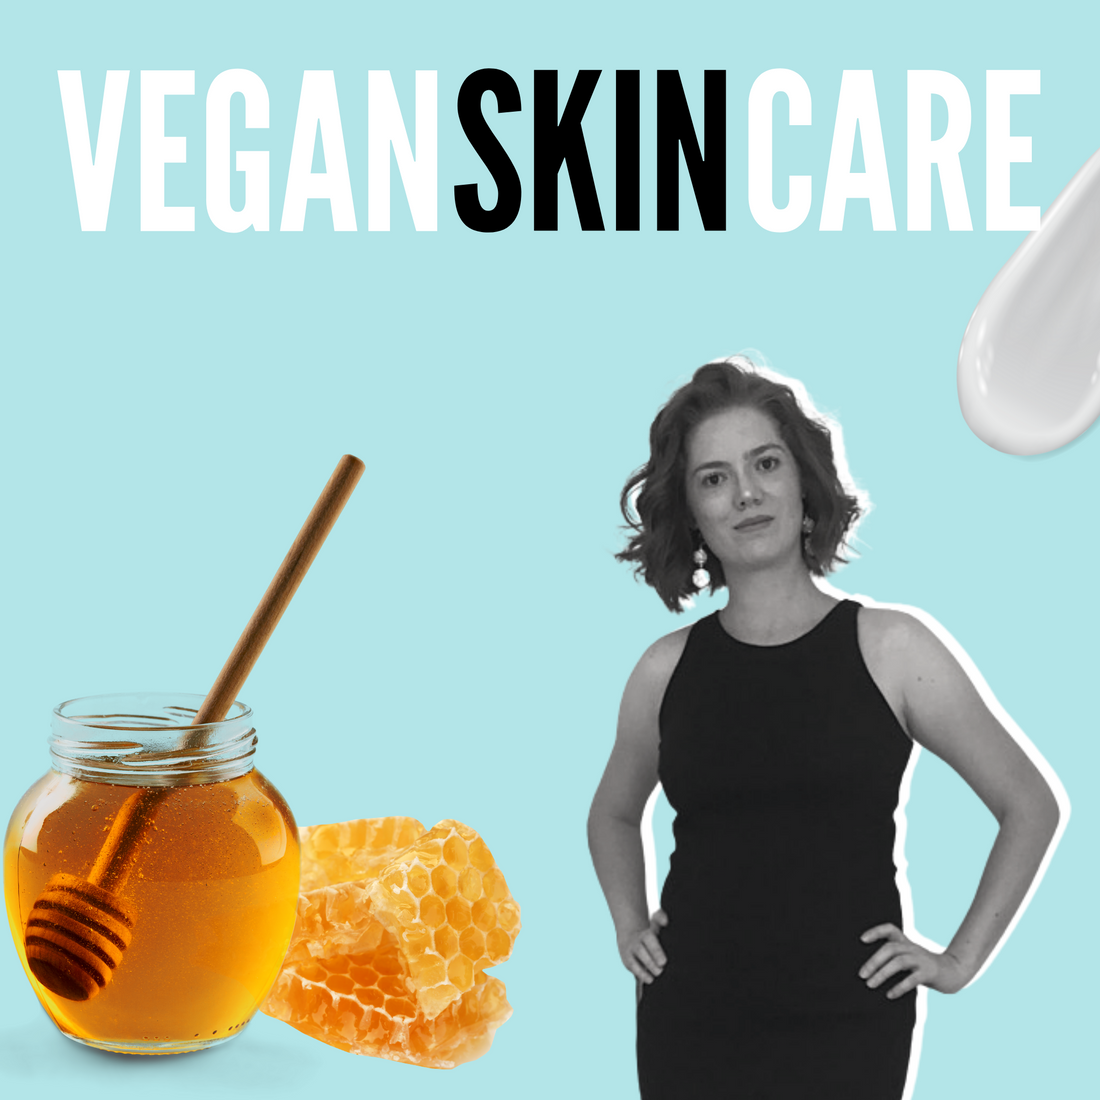 [Video] Why Choose Vegan Skincare